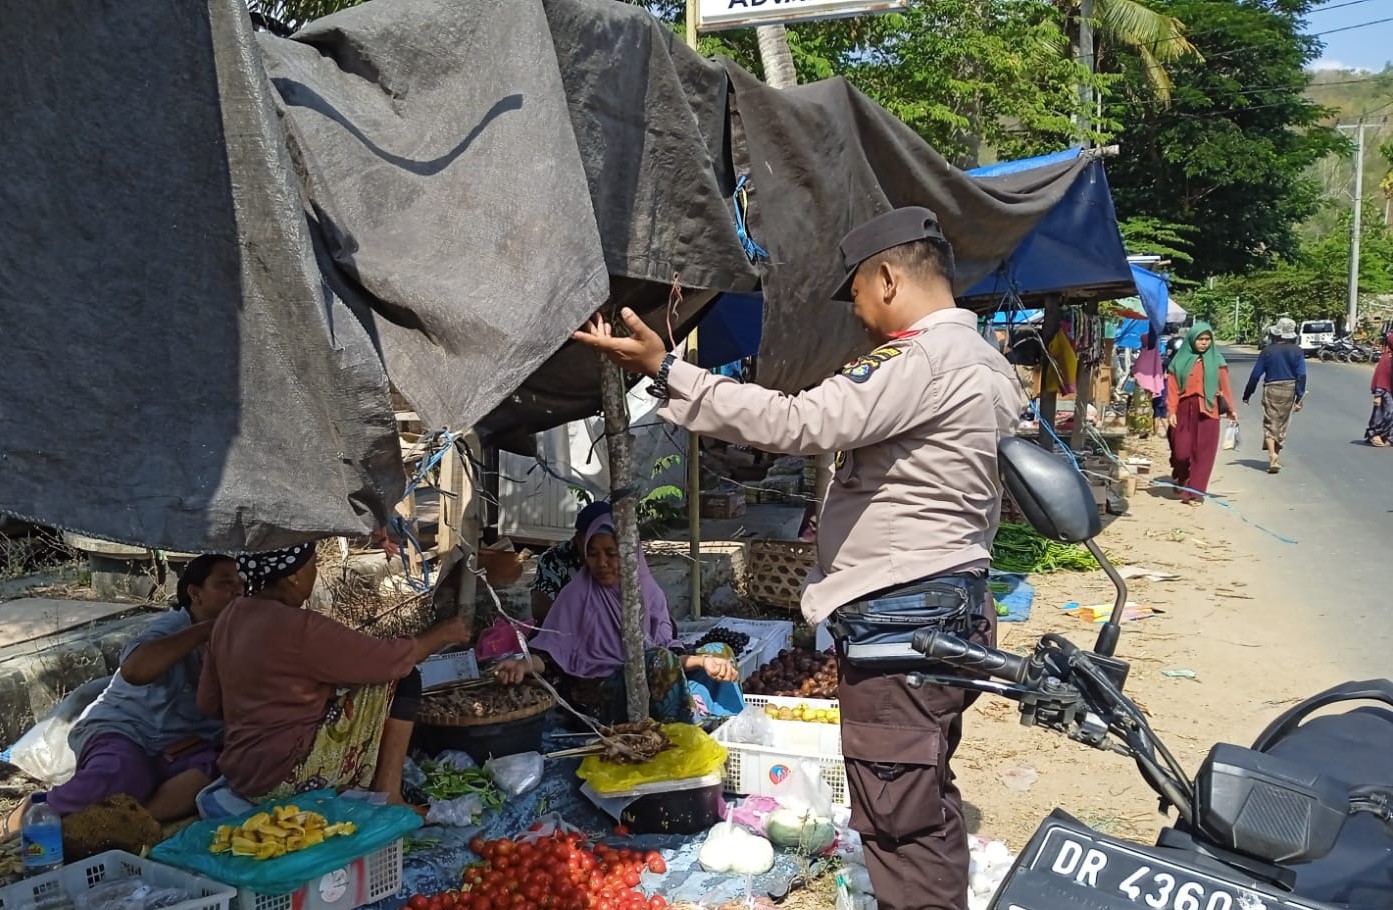 Polres Lombok Barat Gelar Sosialisasi Pemilu 2024 di Pasar Eyat Mayang dan Pelabuhan Lembar